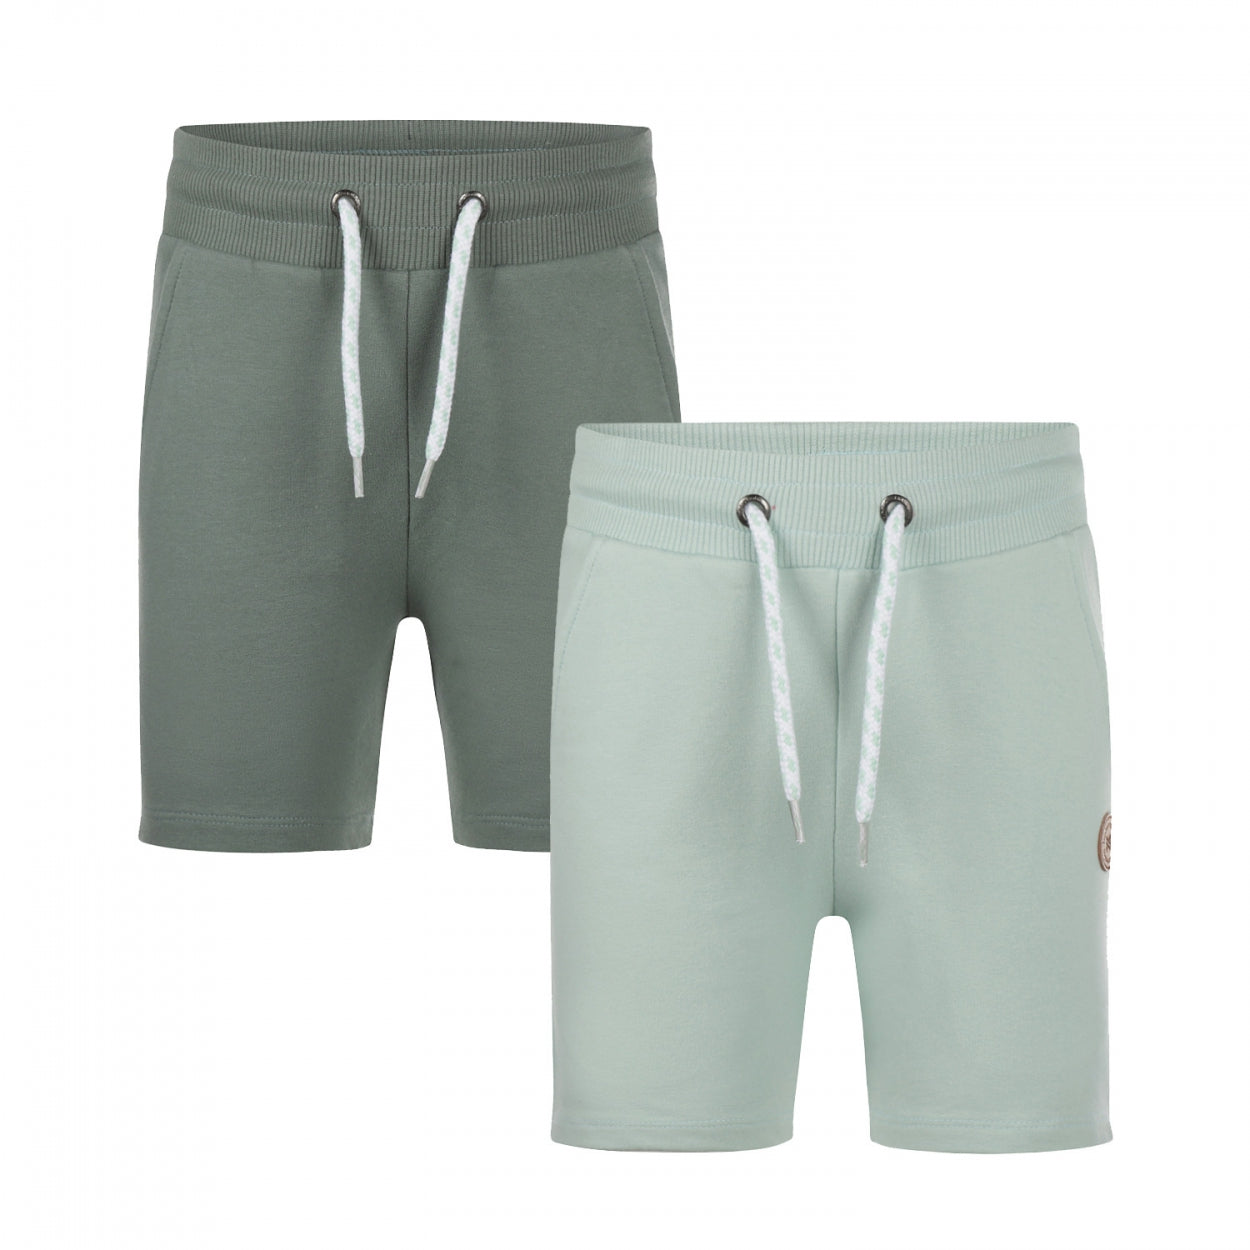 Jongens Jogging shorts 2-pack van Koko Noko in de kleur Dusty green in maat 128.